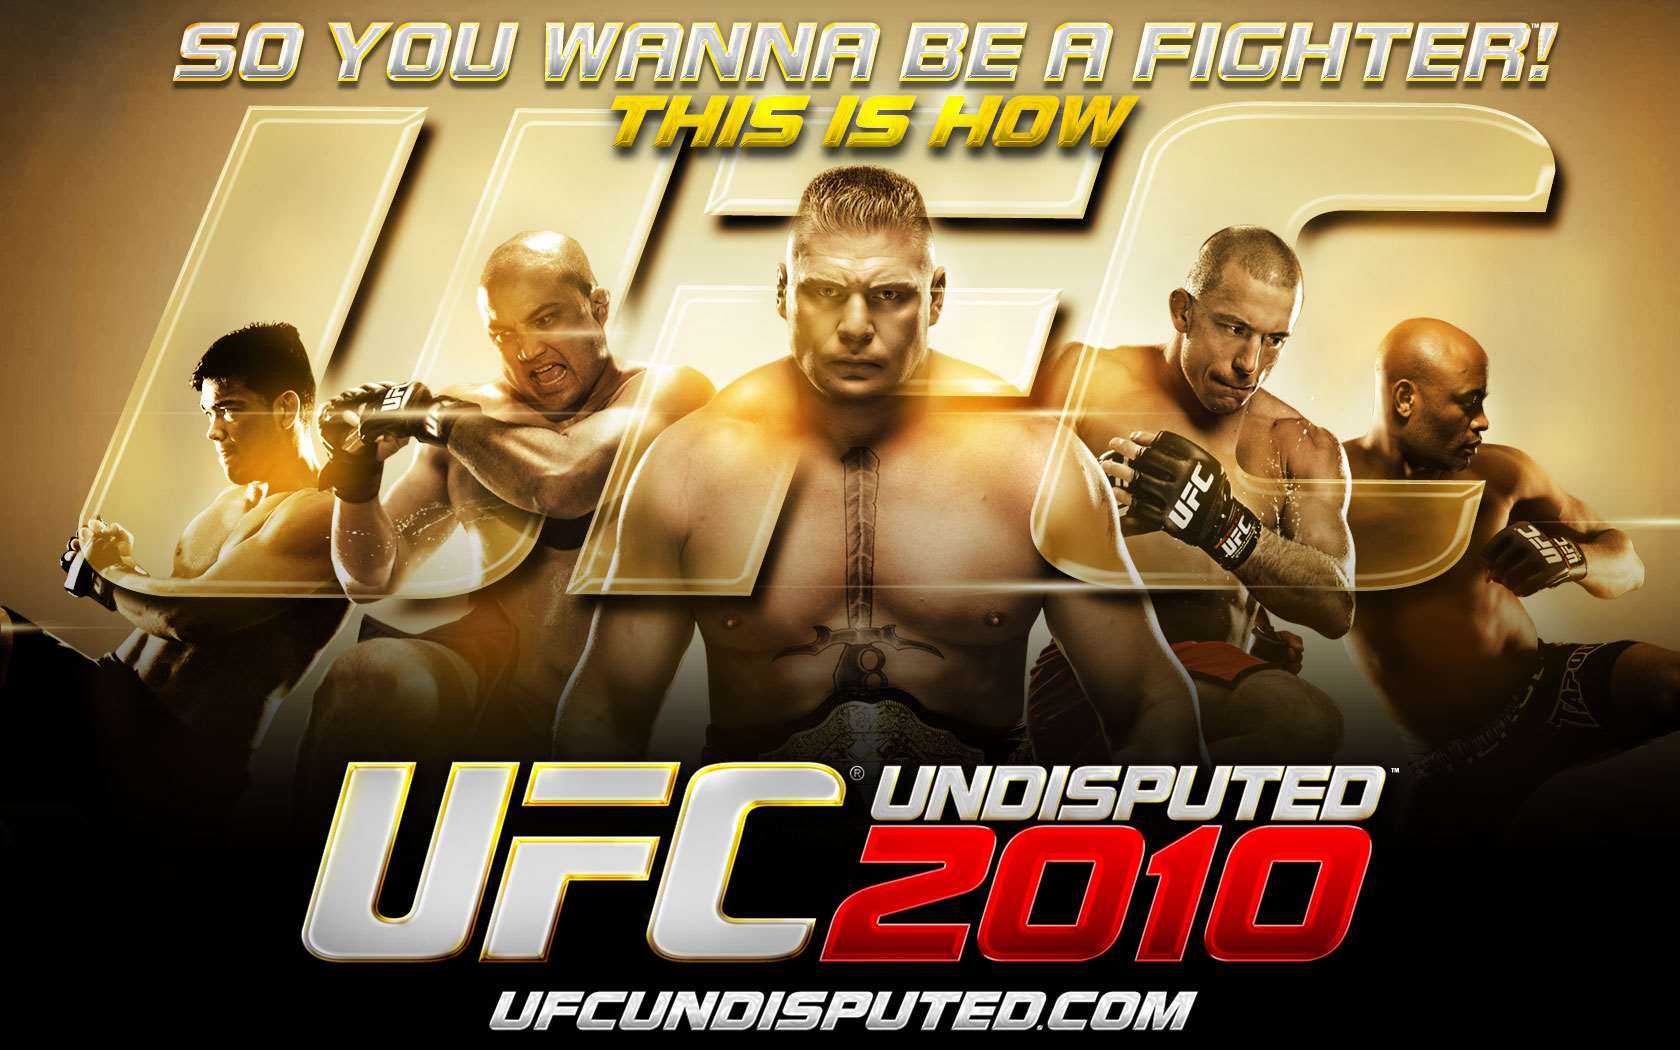 UFC Undisputed 2010 Wallpaper - 3 (1680 x 1050)